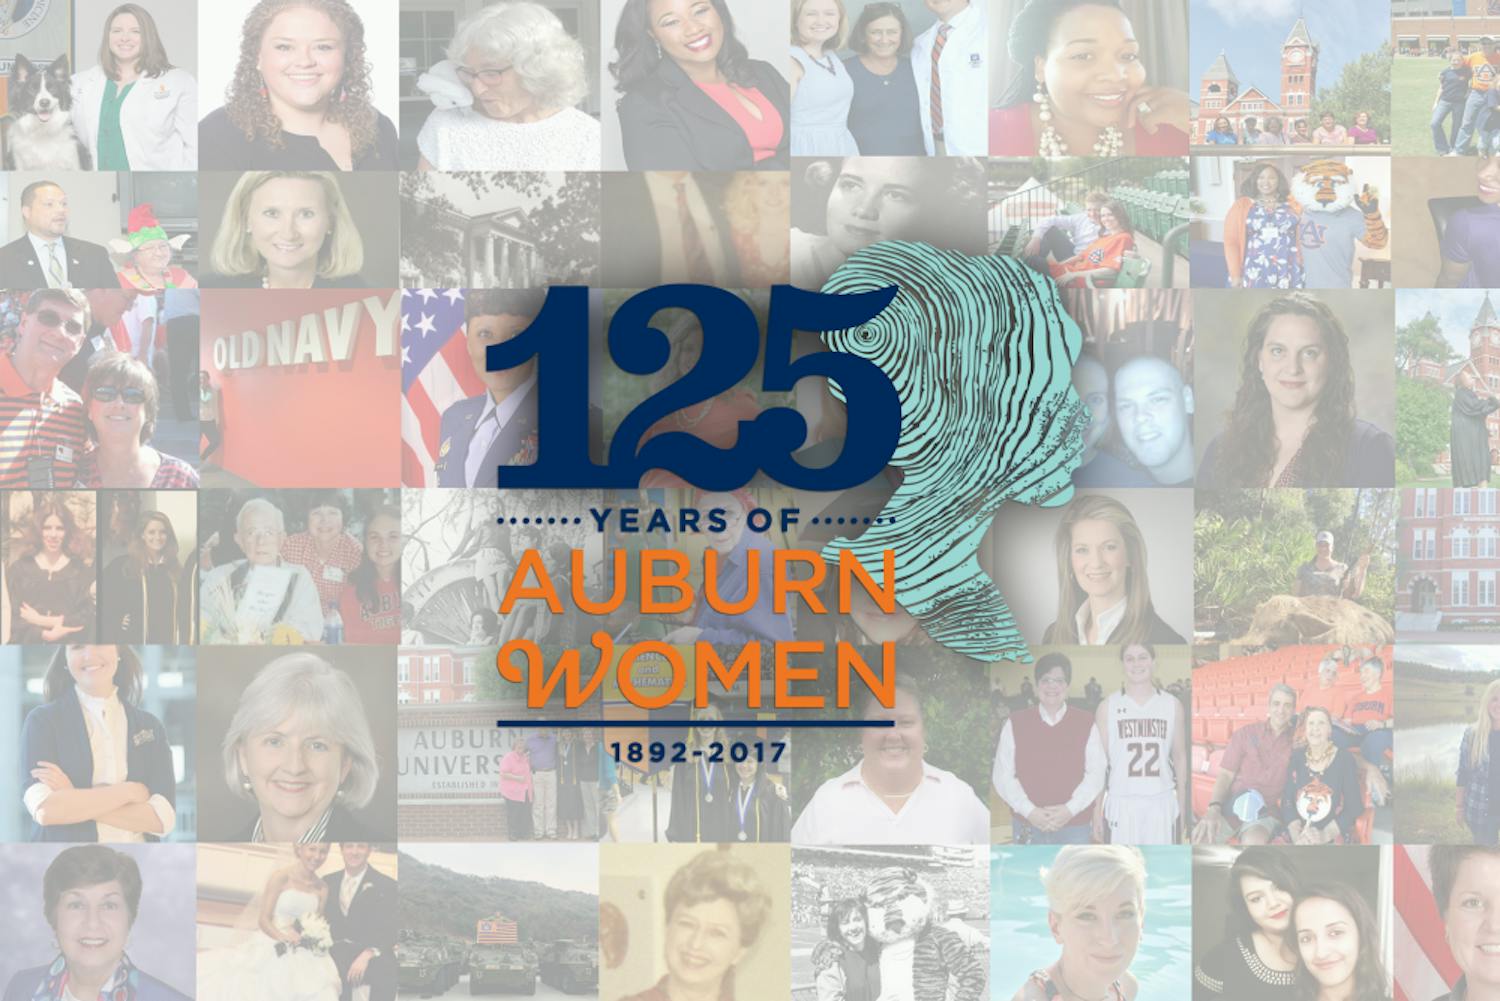 125 years of Auburn Women